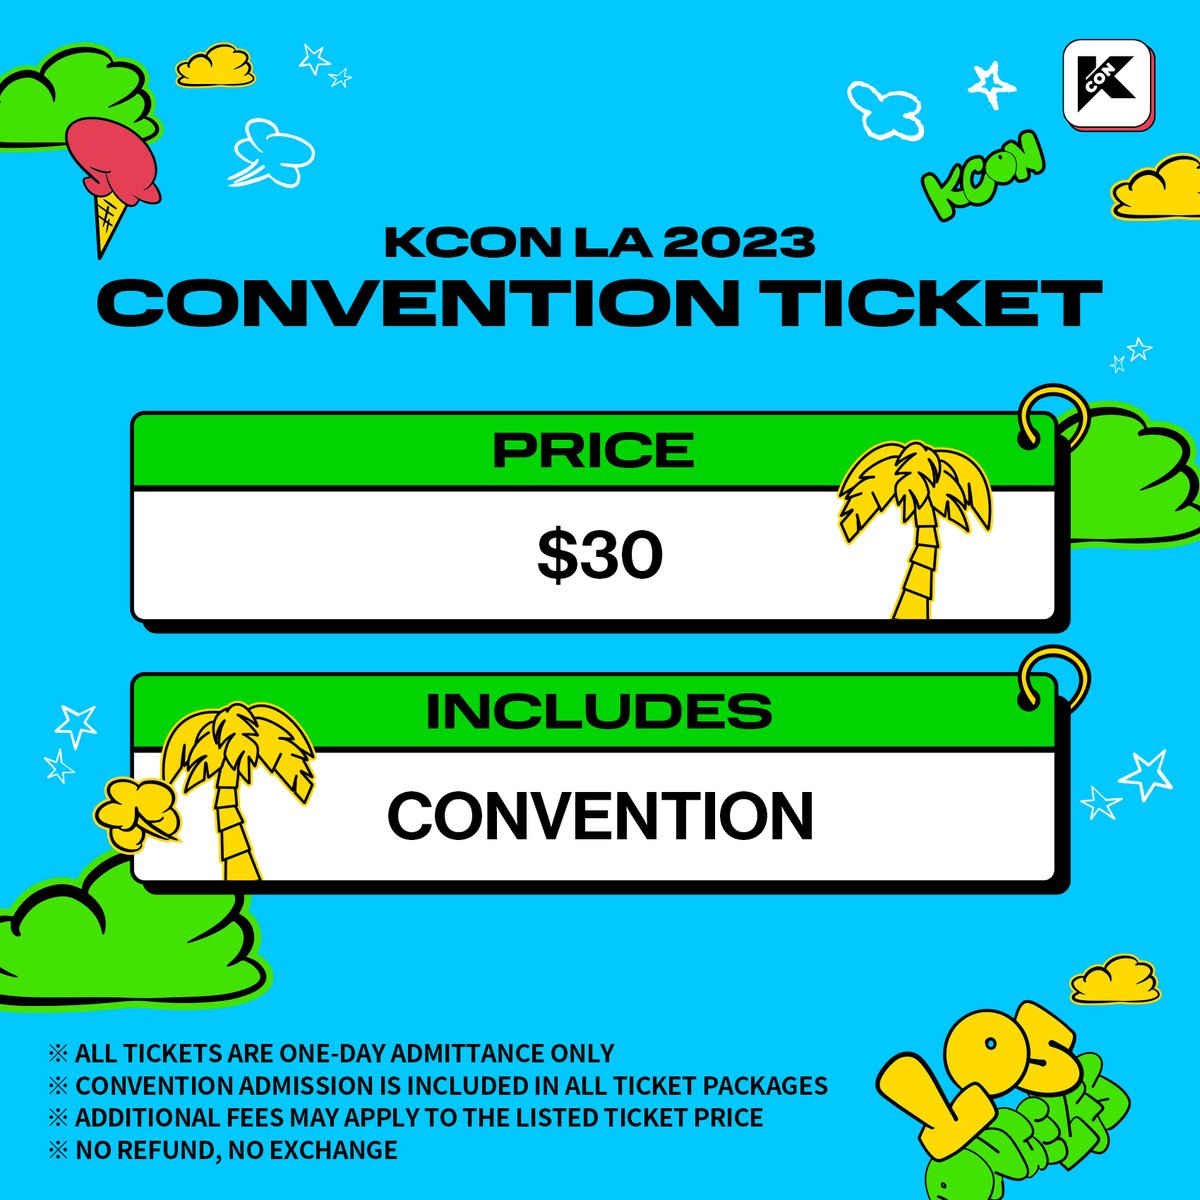 🎫 𝐓𝐈𝐂𝐊𝐄𝐓 𝐈𝐍𝐅𝐎𝐑𝐌𝐀𝐓𝐈𝐎𝐍     

#KCONLA2023  
8.18.~8.20.  
Let’s #KCON!